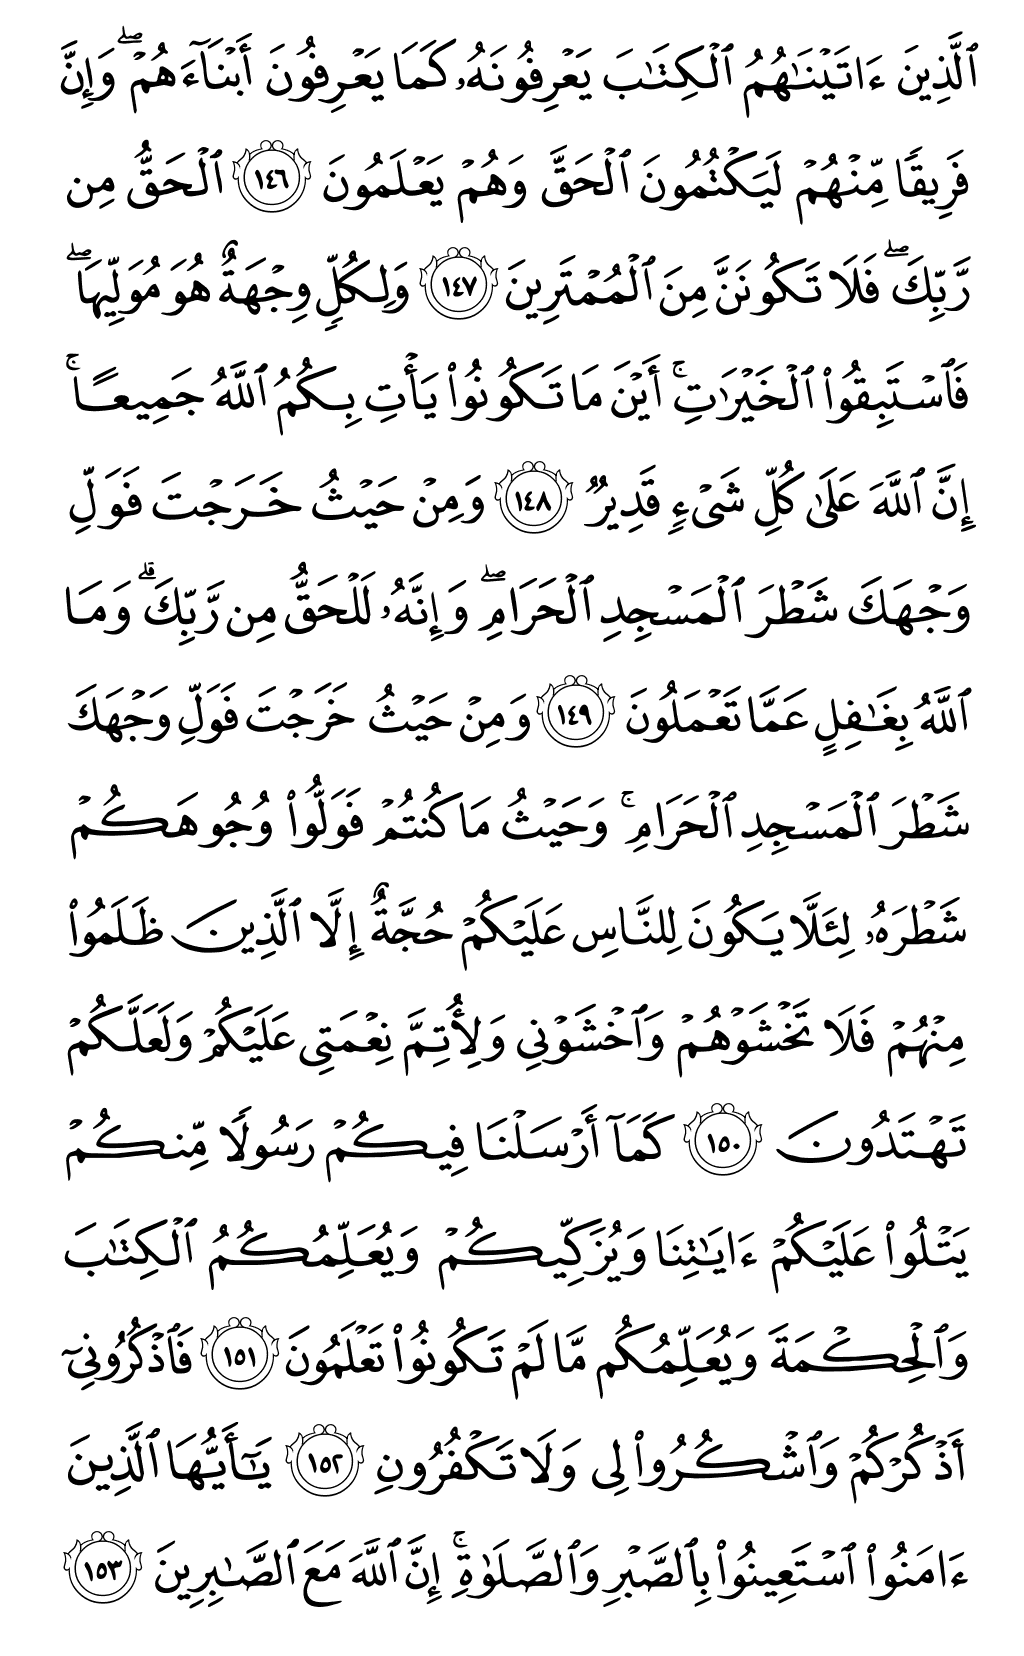 الصفحة رقم 23 من القرآن الكريم